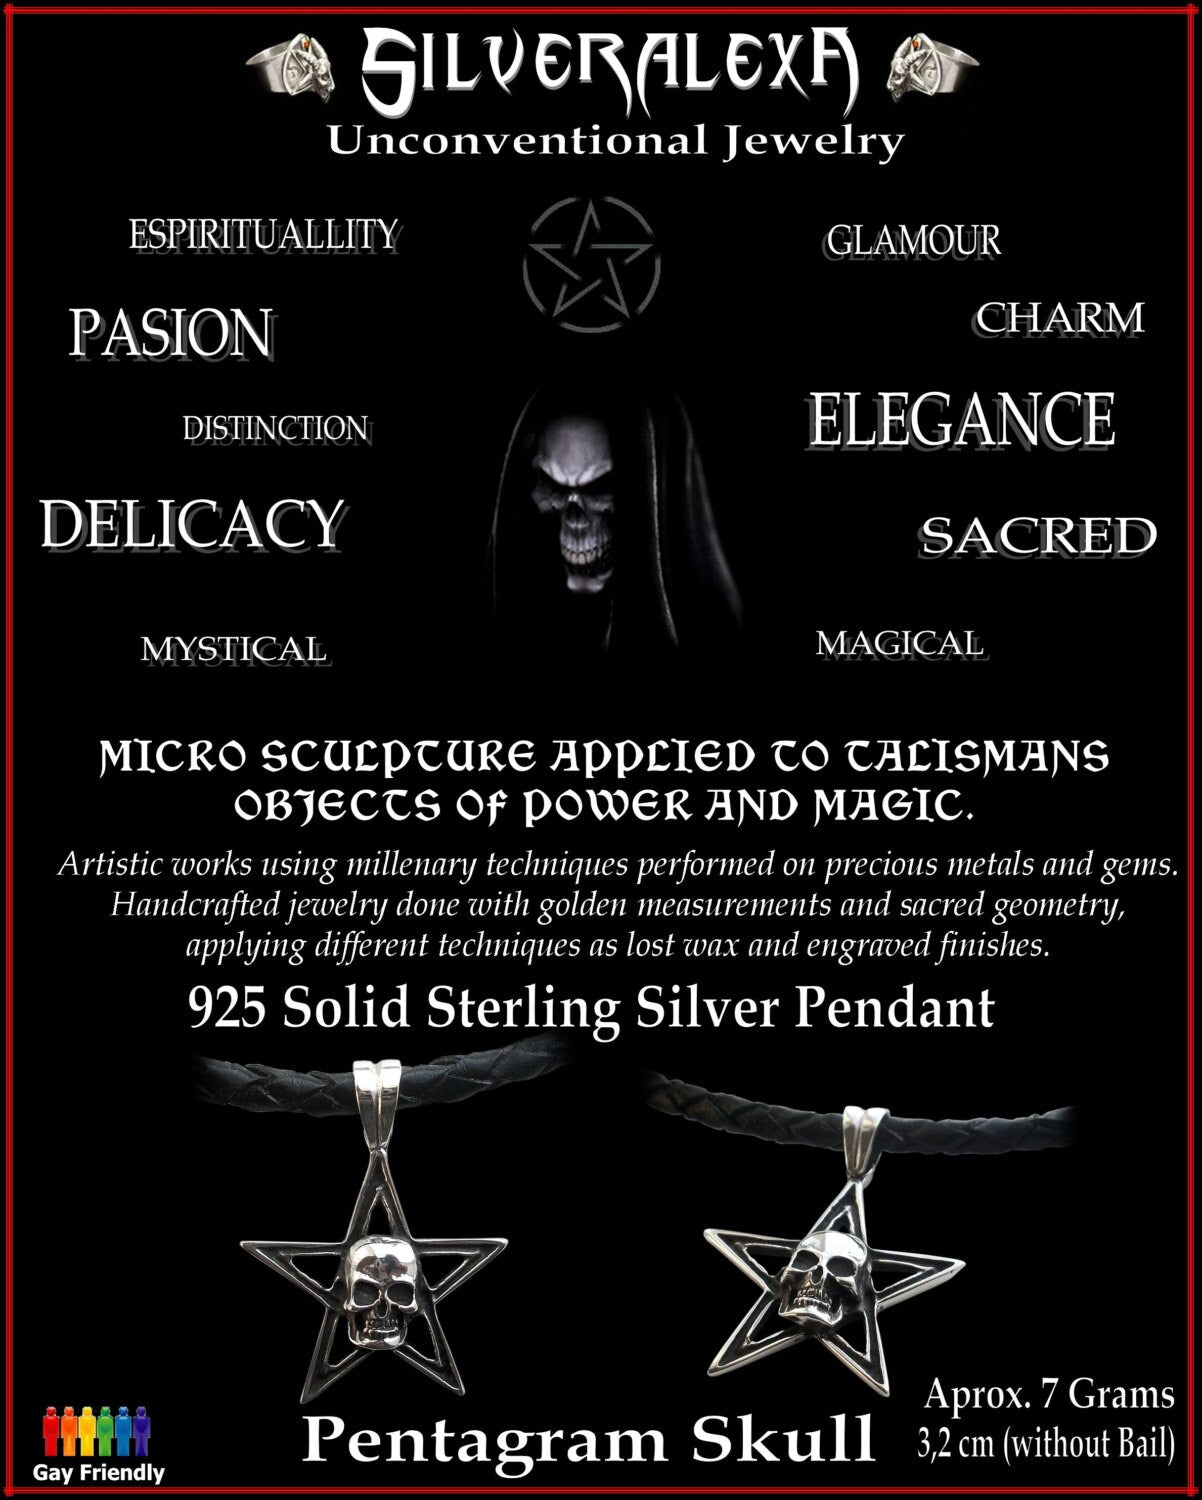 Skull pendant - Sterling Silver Pentagram Skull Pendant w/ italian black braided leather necklace